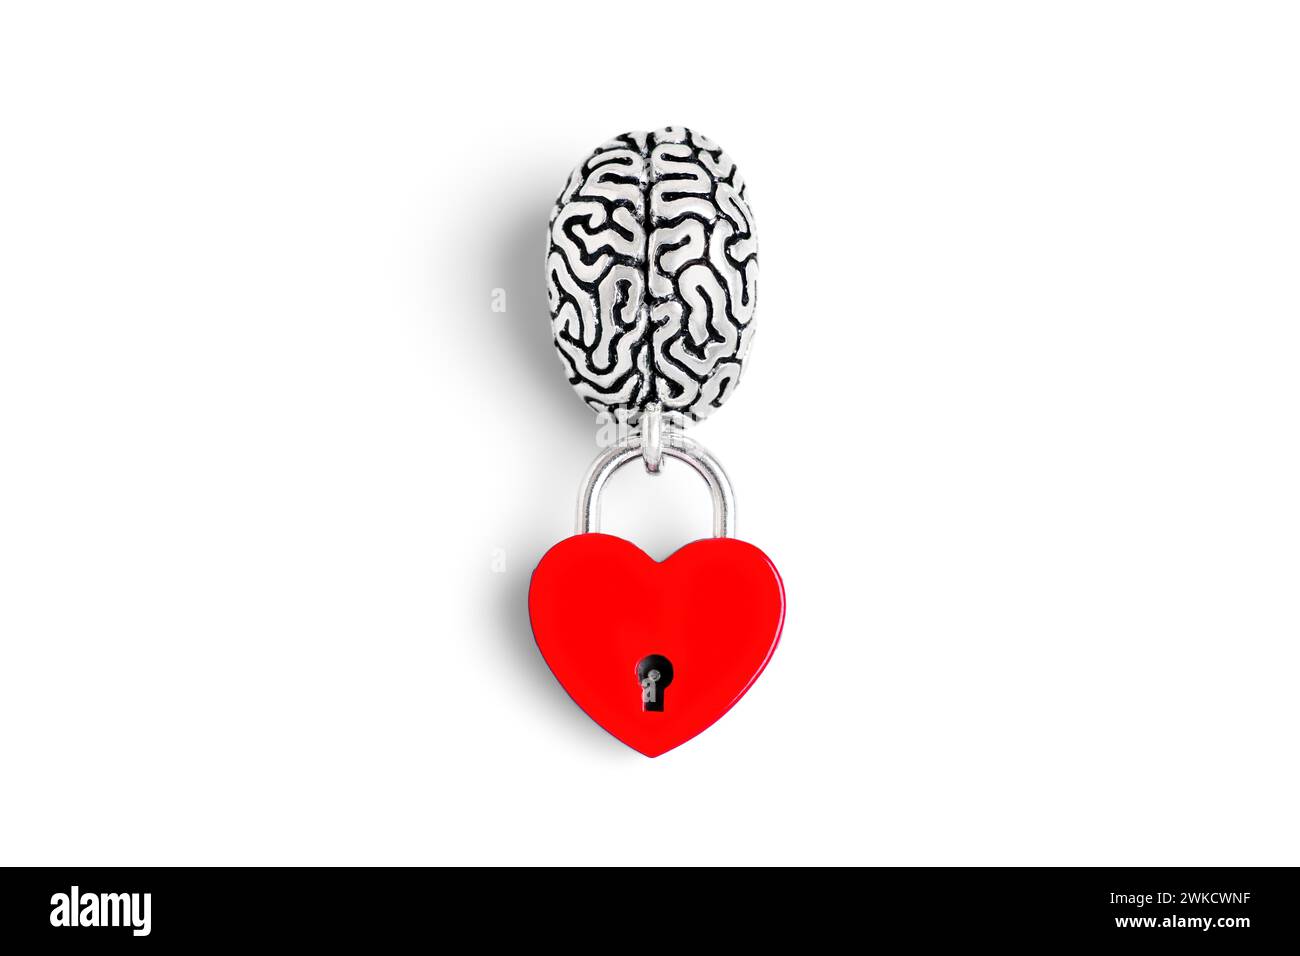 Il modello del cervello umano è collegato a un lucchetto rosso a forma di cuore isolato sul bianco. Concetto di fusione cuore-mente. Foto Stock